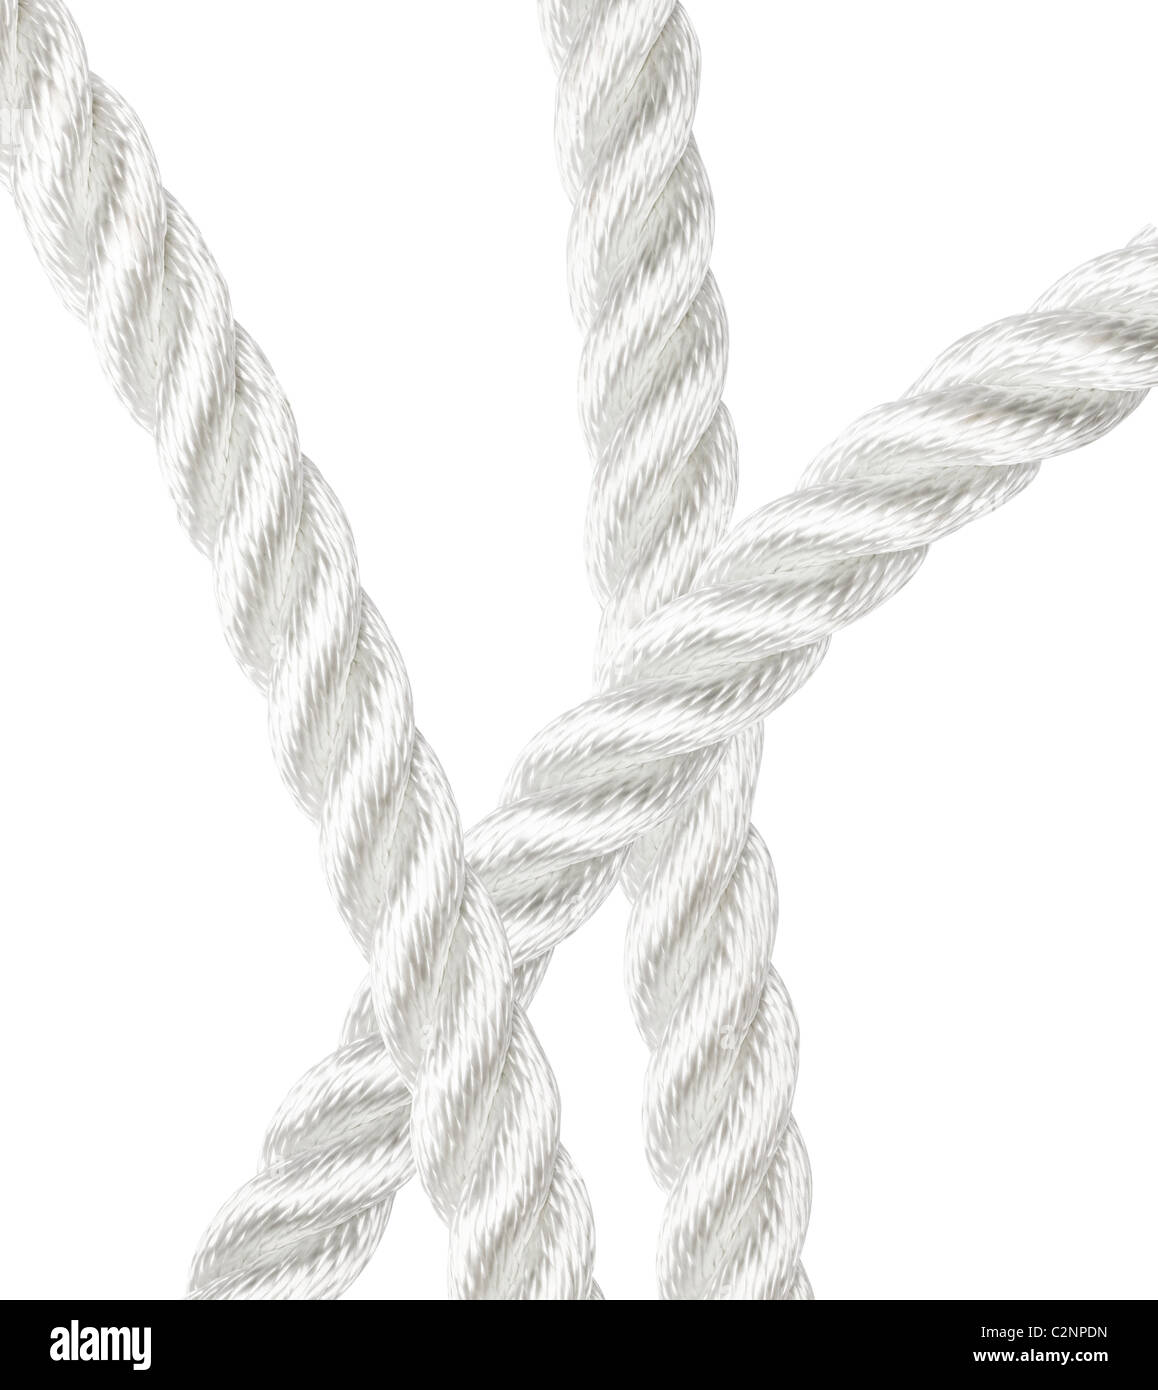 La corde de nylon fort chevauchement isolated on white Banque D'Images